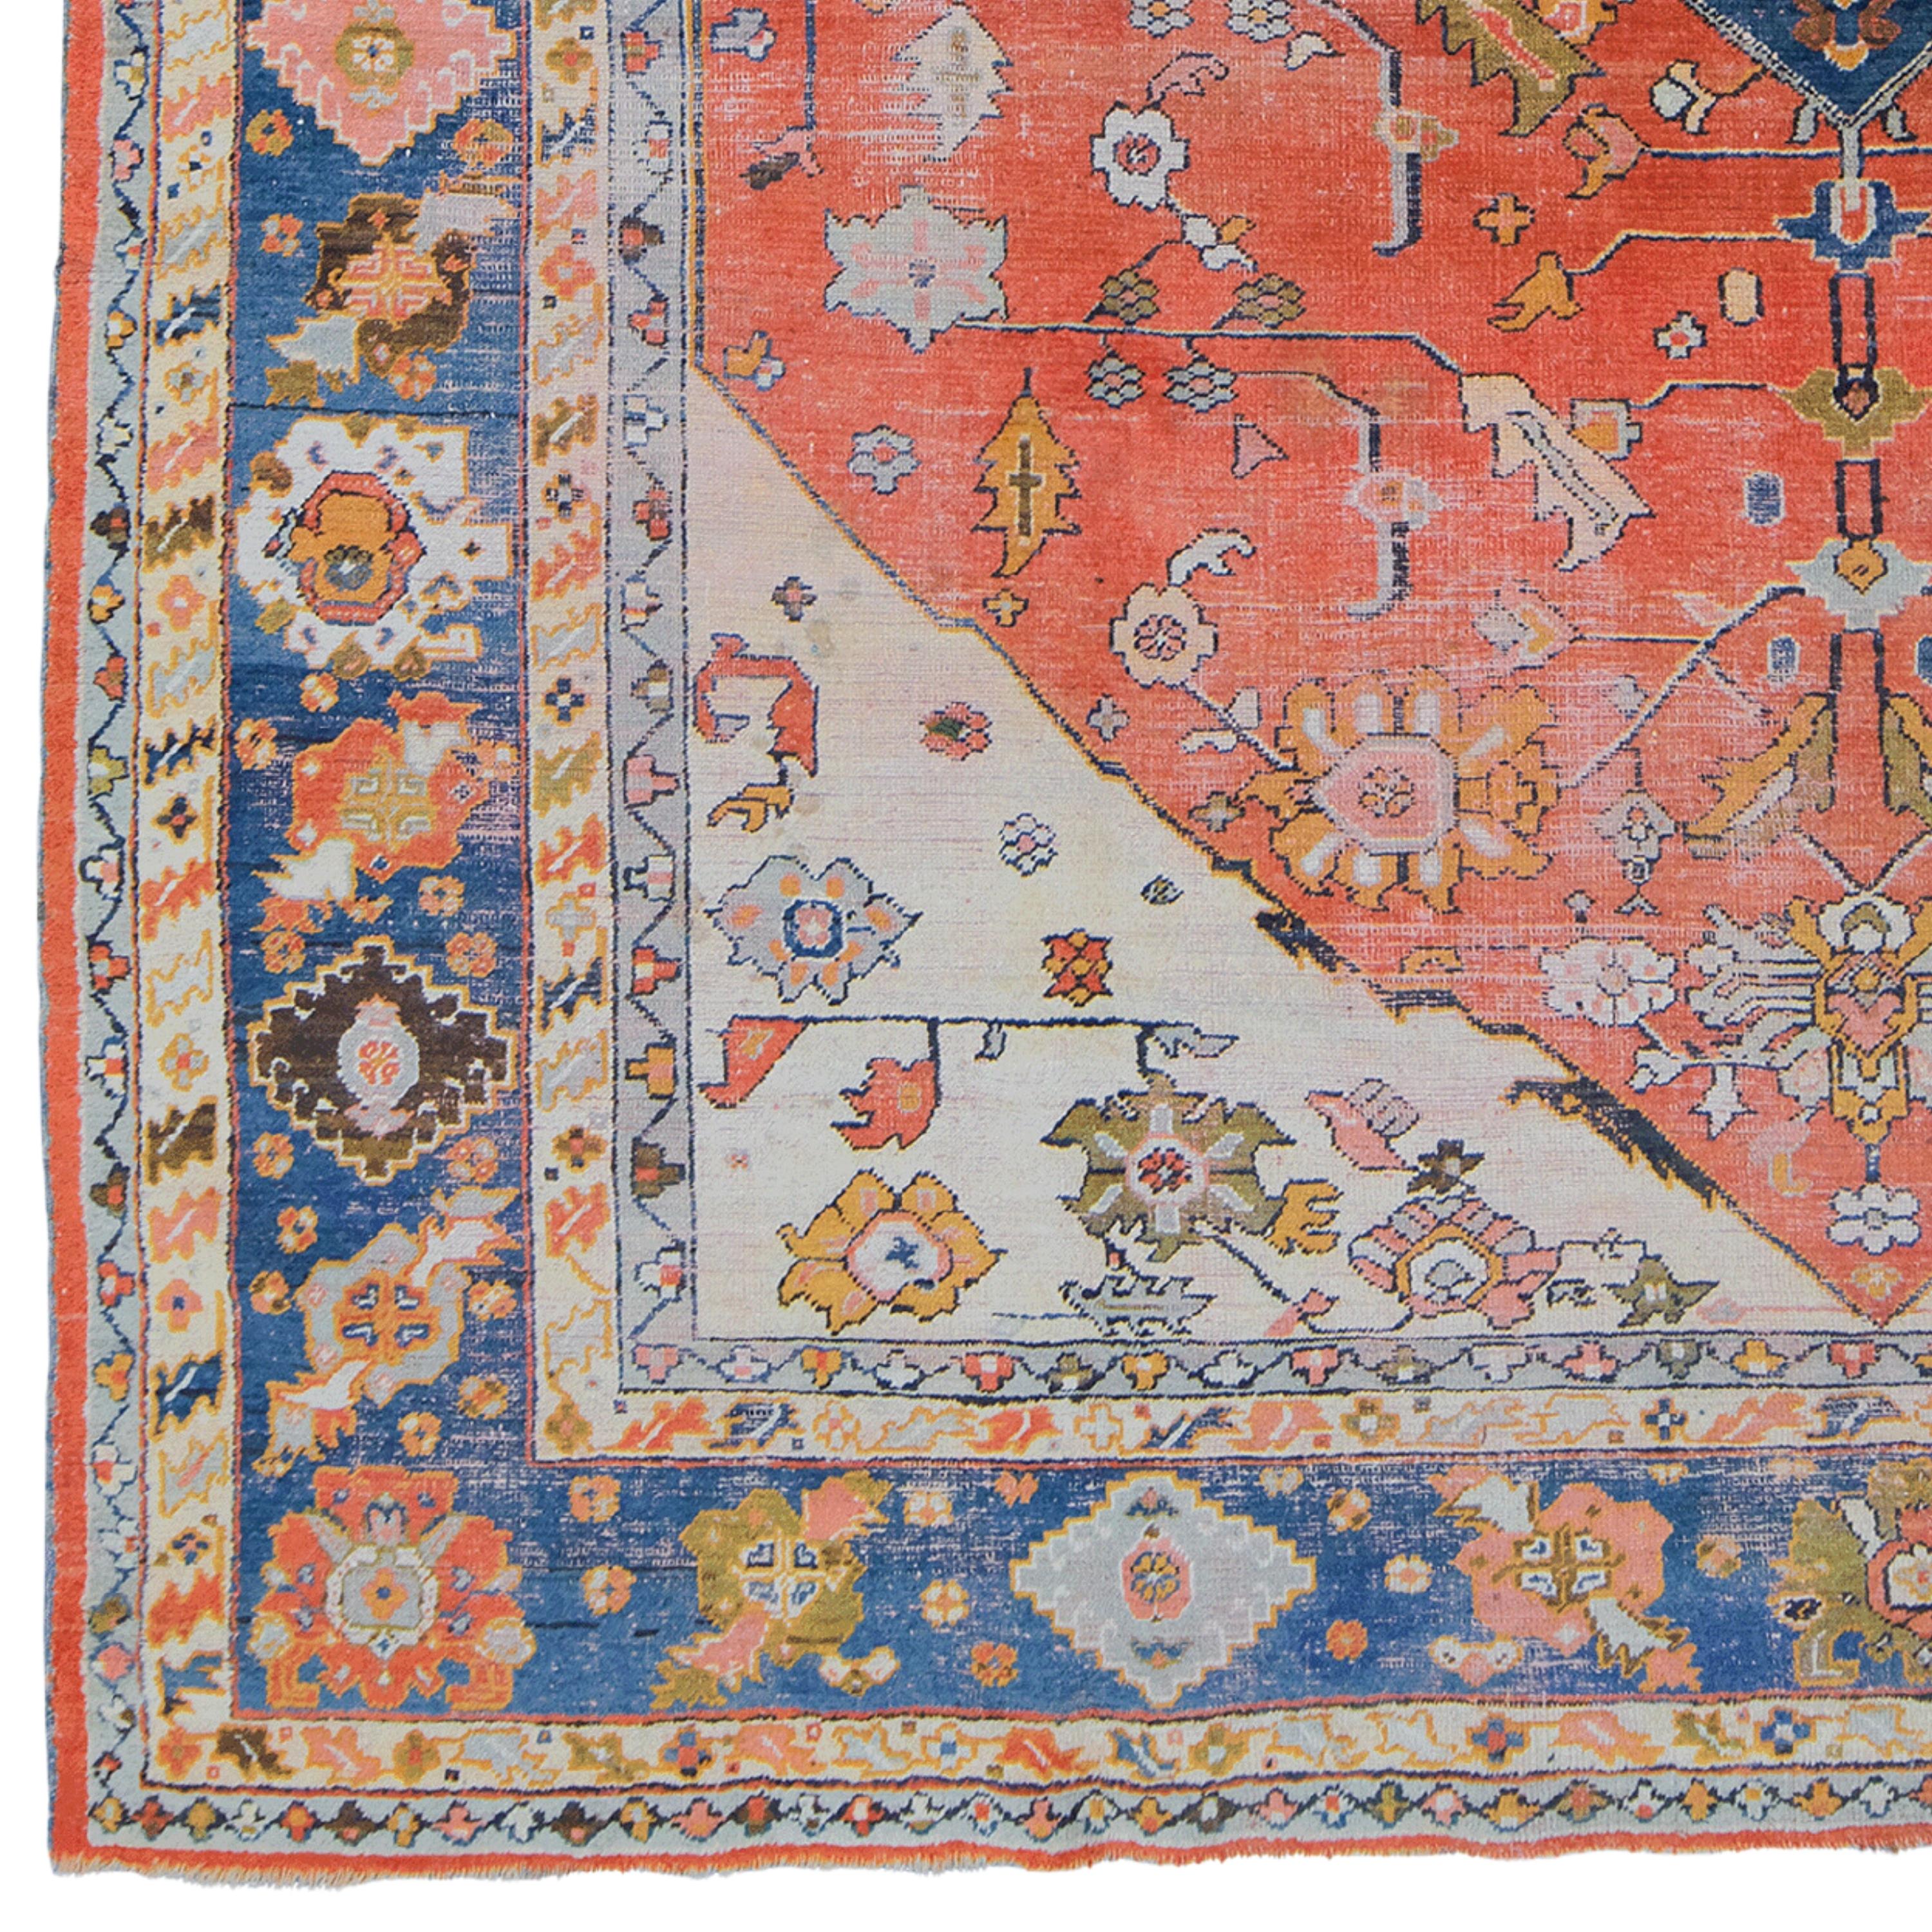 Dieser elegante antike türkische Uşak-Teppich stammt aus dem späten 19. Jahrhundert und zeigt die feinste Handwerkskunst seiner Zeit. Mit seiner reichen Farbpalette und den detaillierten Mustern kann dieser Teppich jeden Raum in eine anspruchsvolle